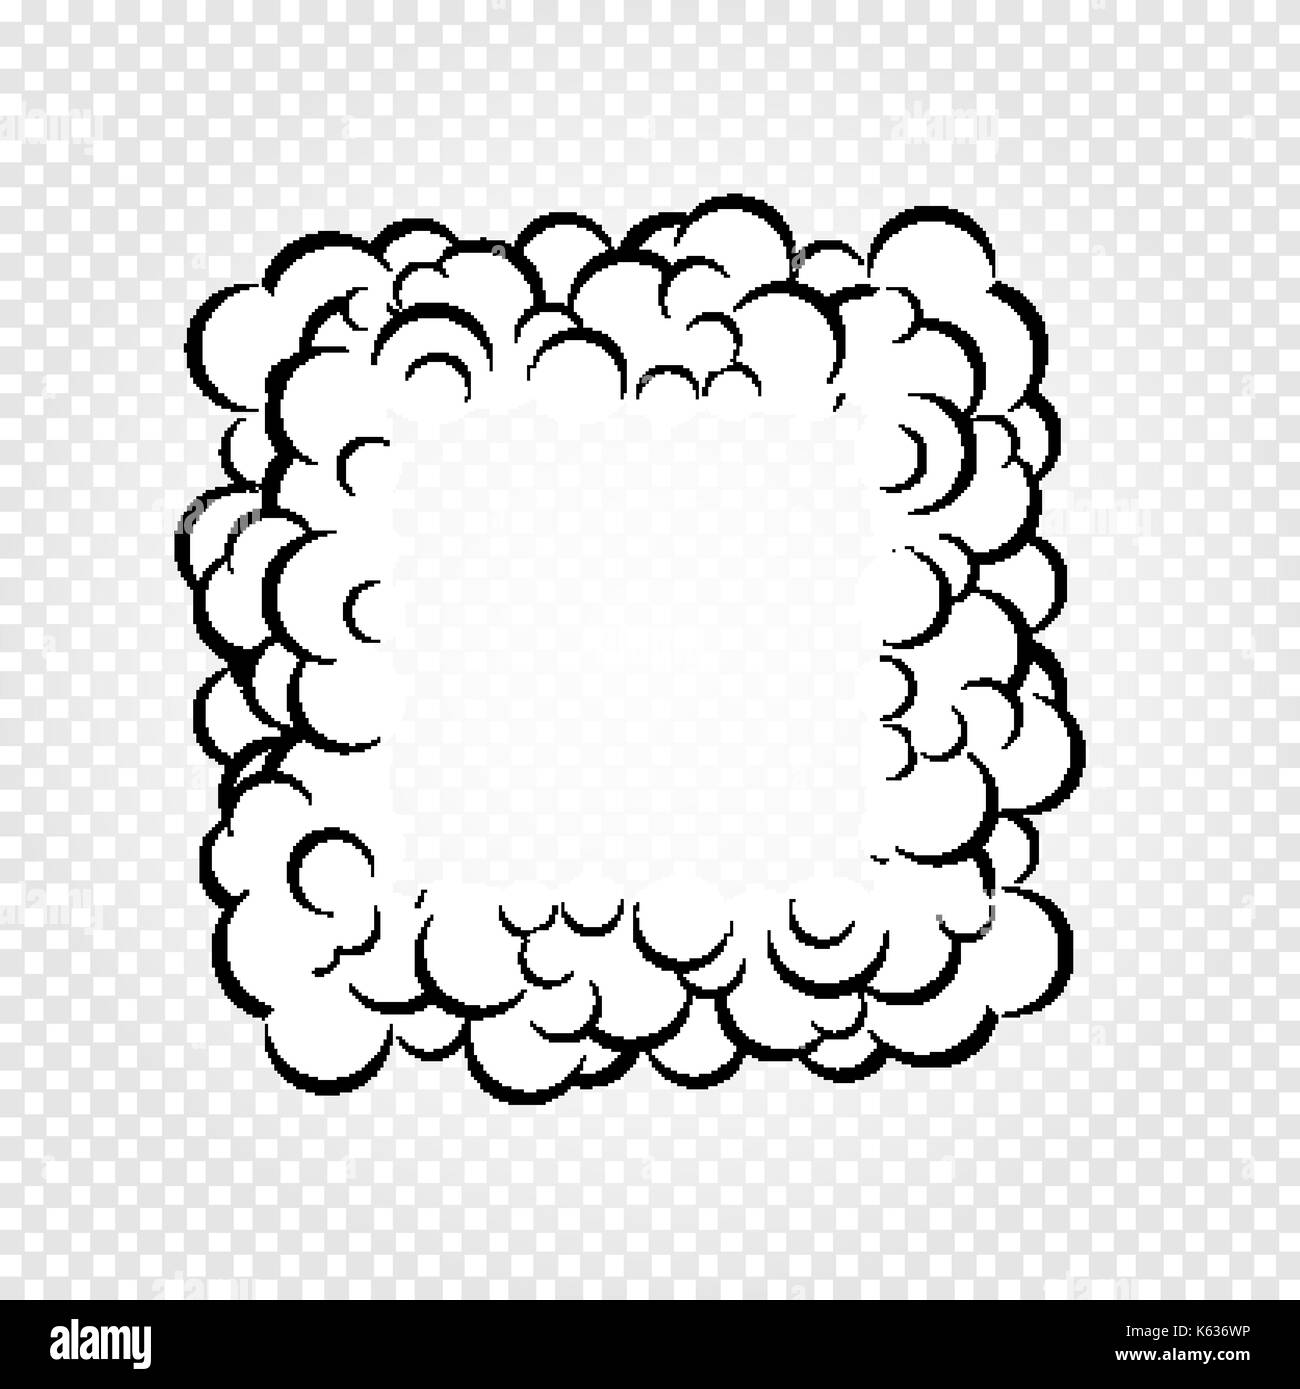 Isolierte cartoon Sprechblasen, Frames von Rauch oder Dampf, Comics dialog Cloud, Vector Illustration auf weißen transparenten Hintergrund. Stock Vektor